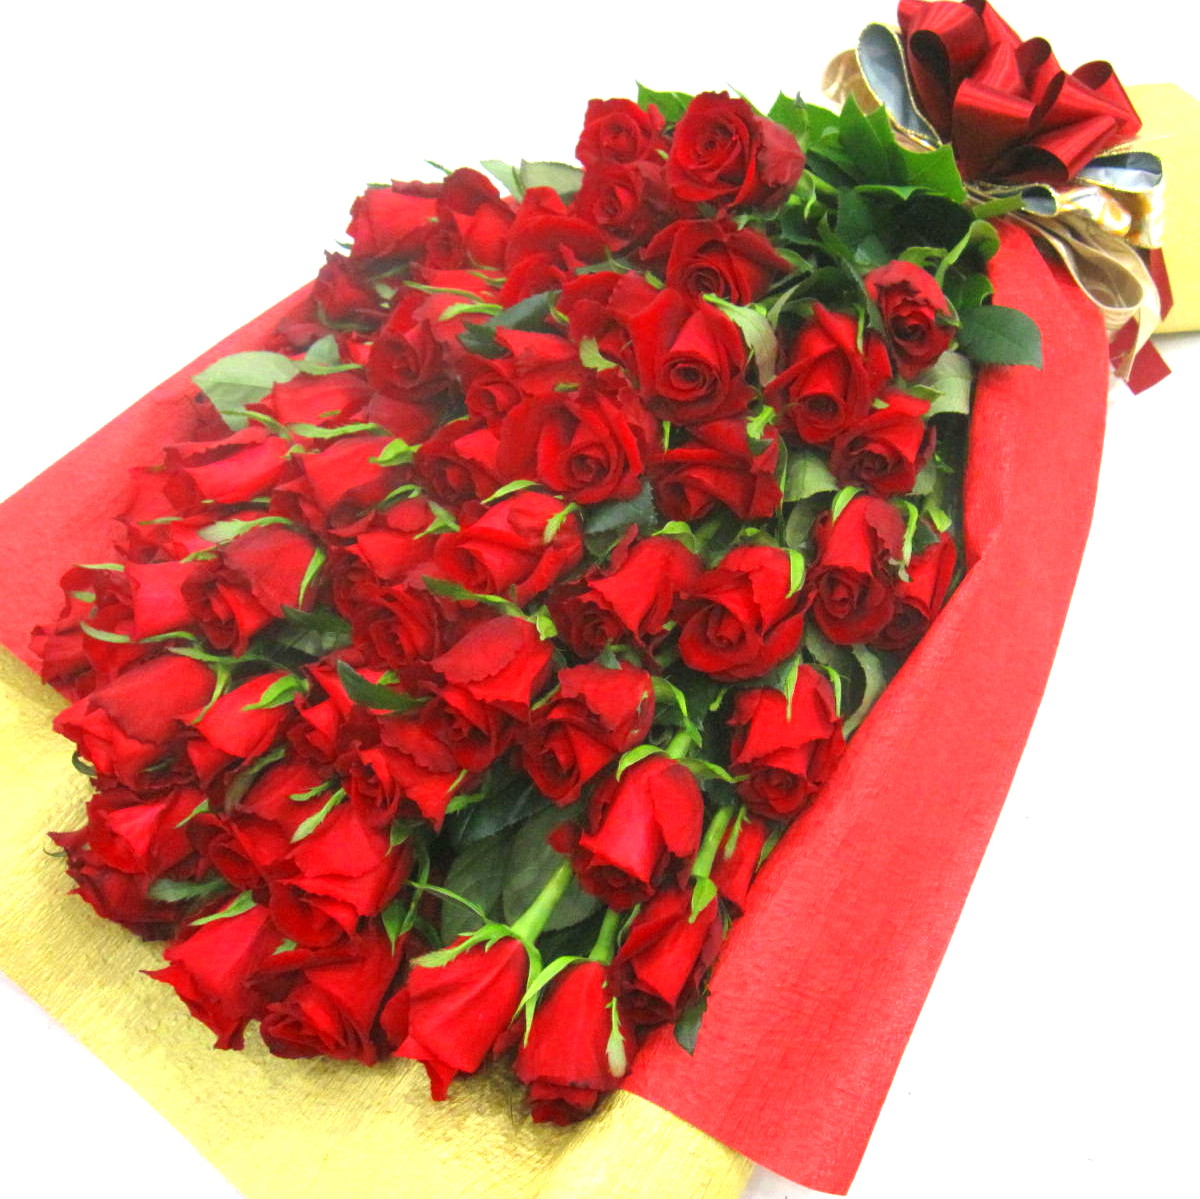 お誕生日 プロポーズ 還暦祝い ダイアモンド婚式に 赤いバラ60本の花束 商品詳細